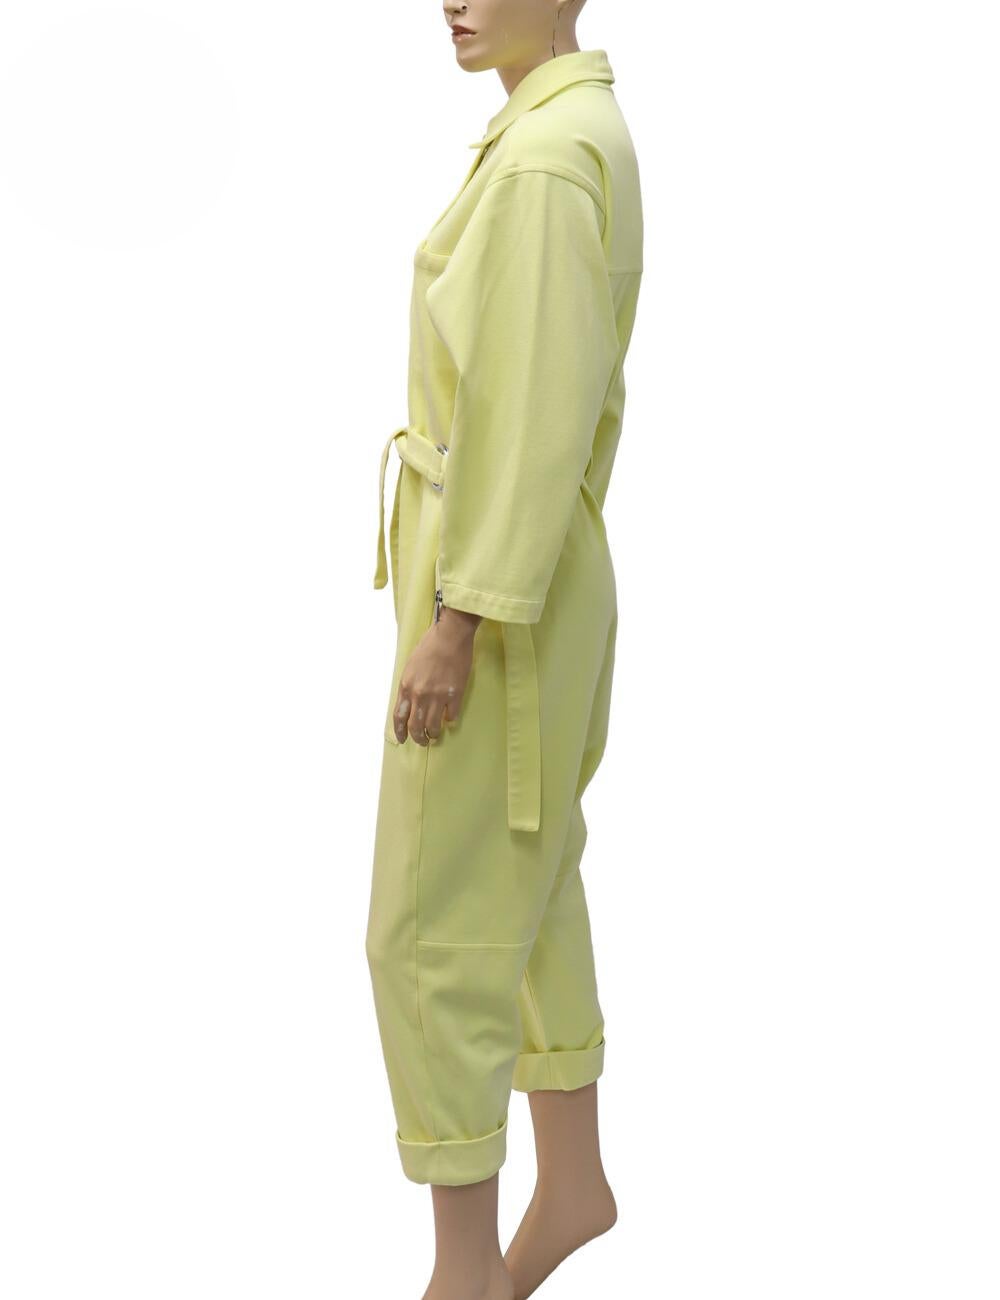 Combinaison utilitaire en tricot sergé jaune pastel de Phillips Lim, caractérisée par un jersey épais, une encolure à col, une patte de boutonnage et une fermeture éclair cachée, des manches longues avec poignets zippés et des poches avant et